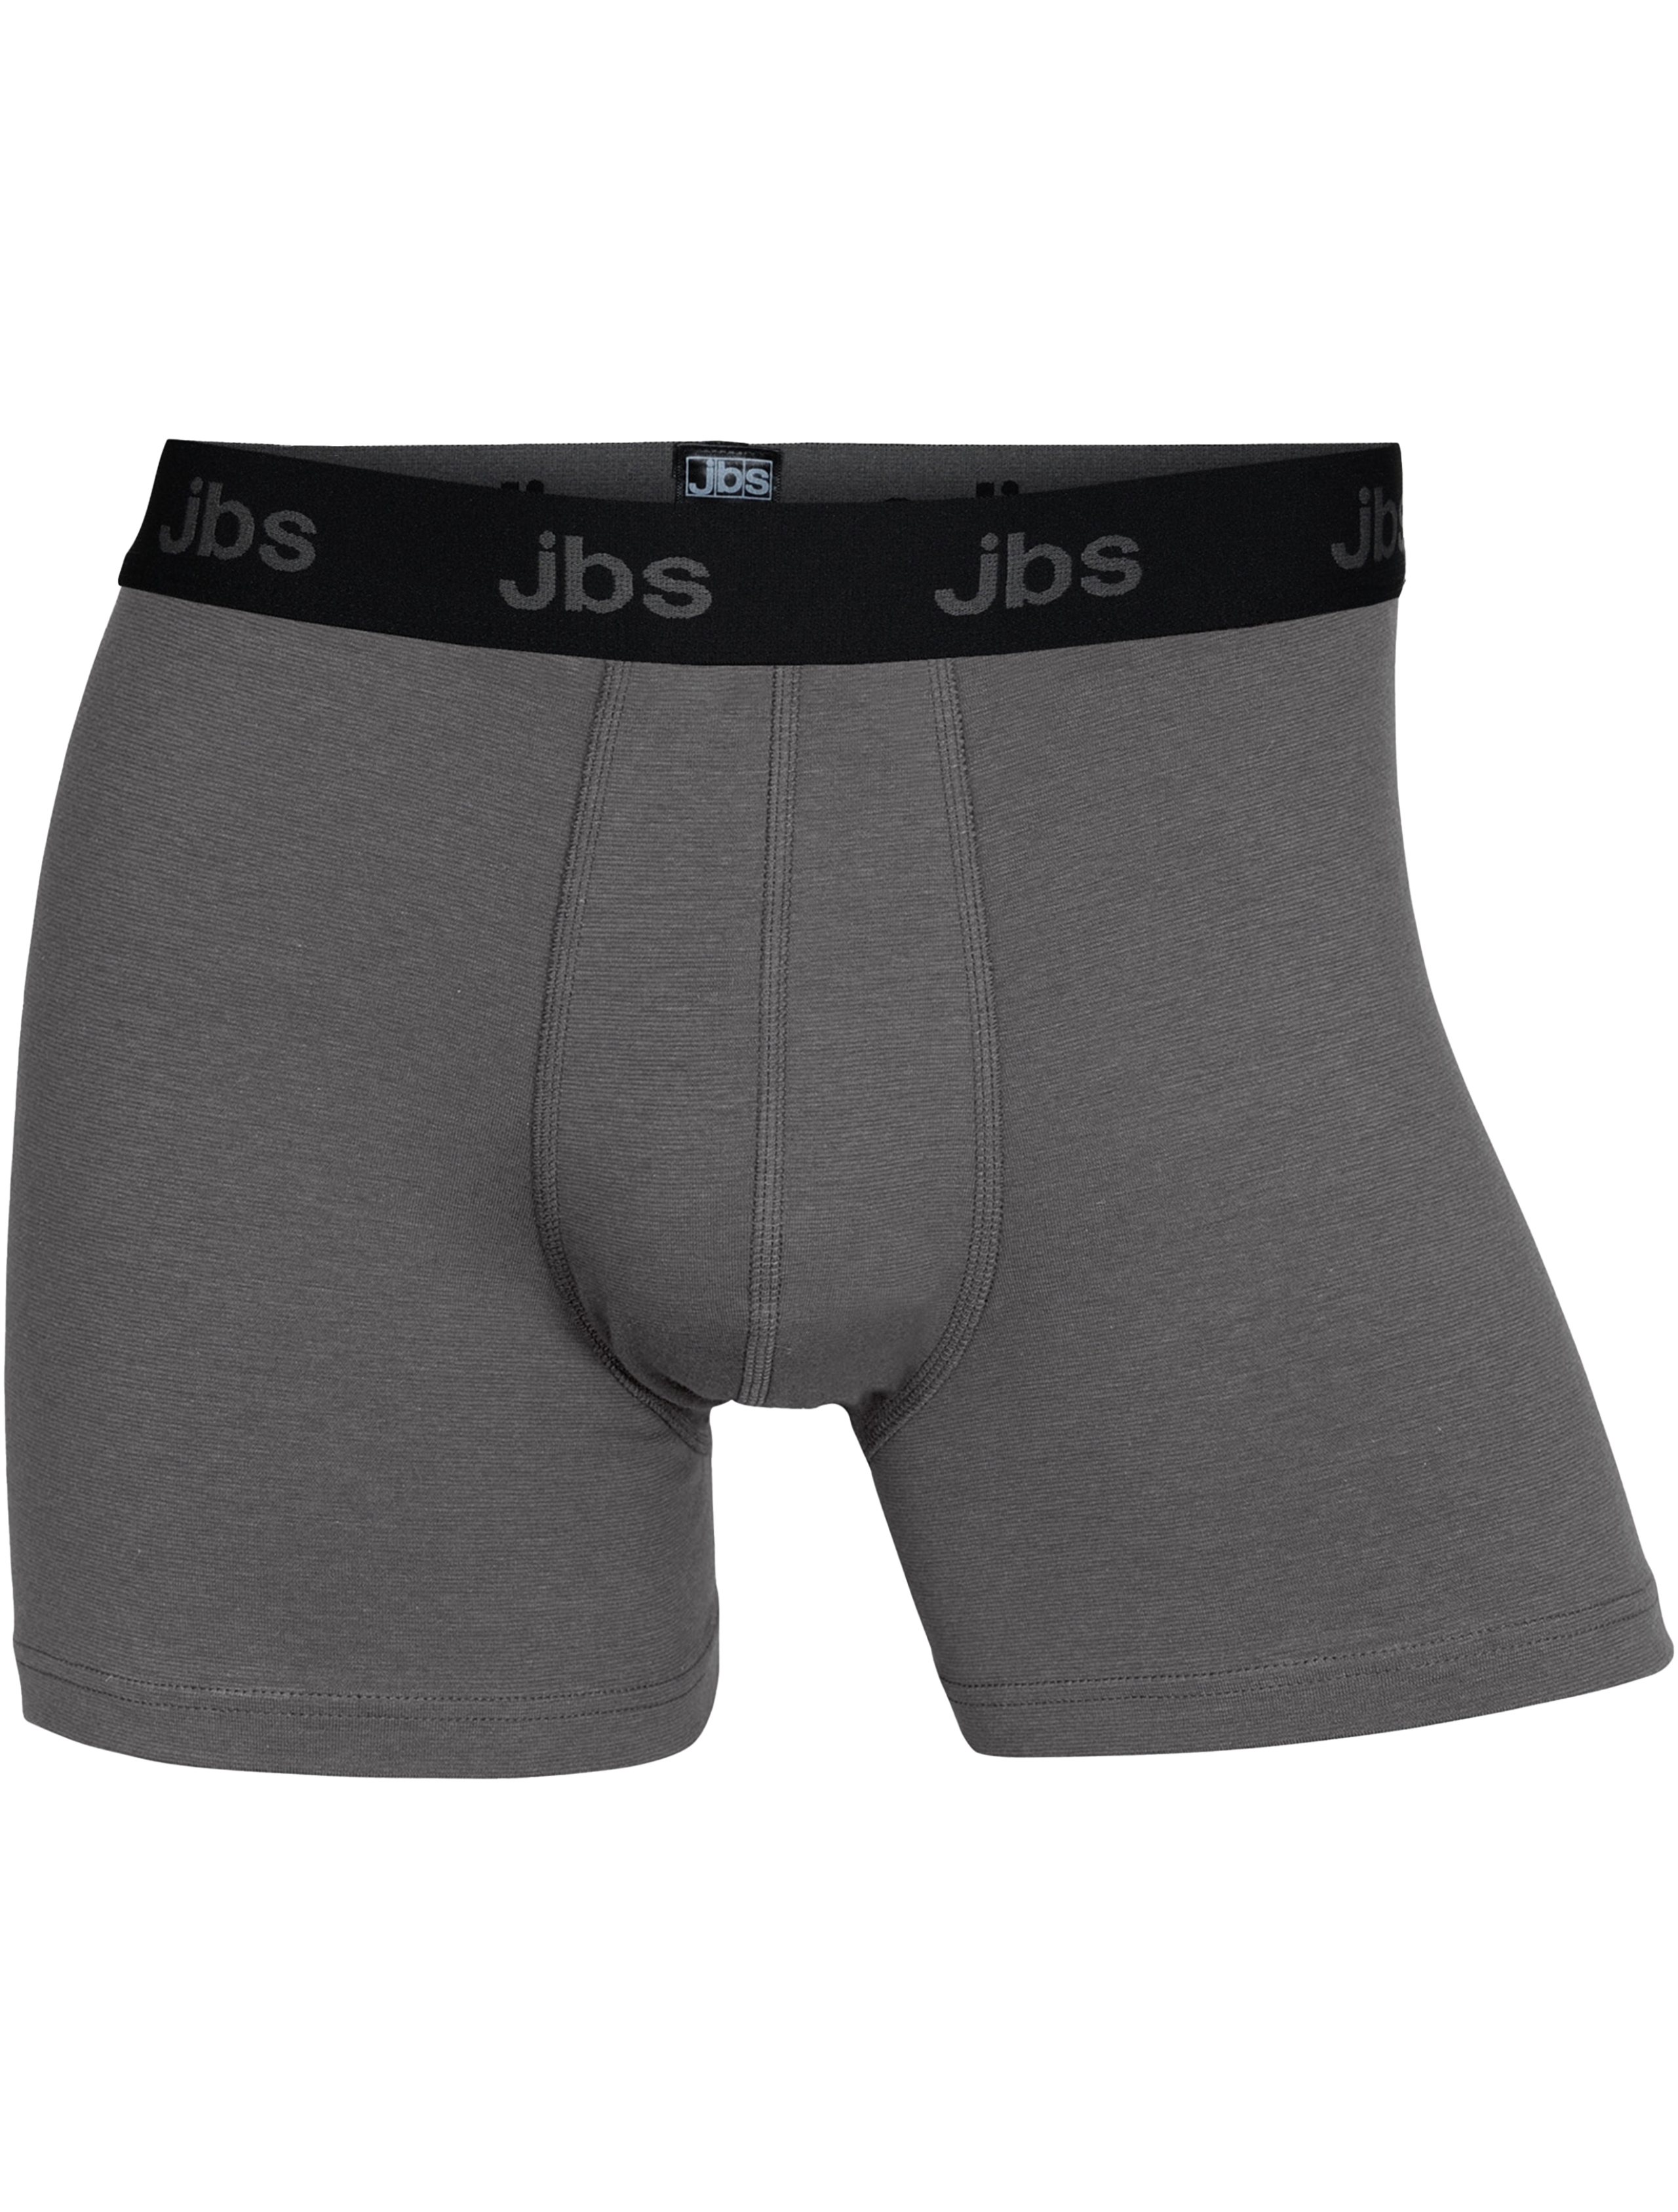 JBS Tights grå / antracit 08